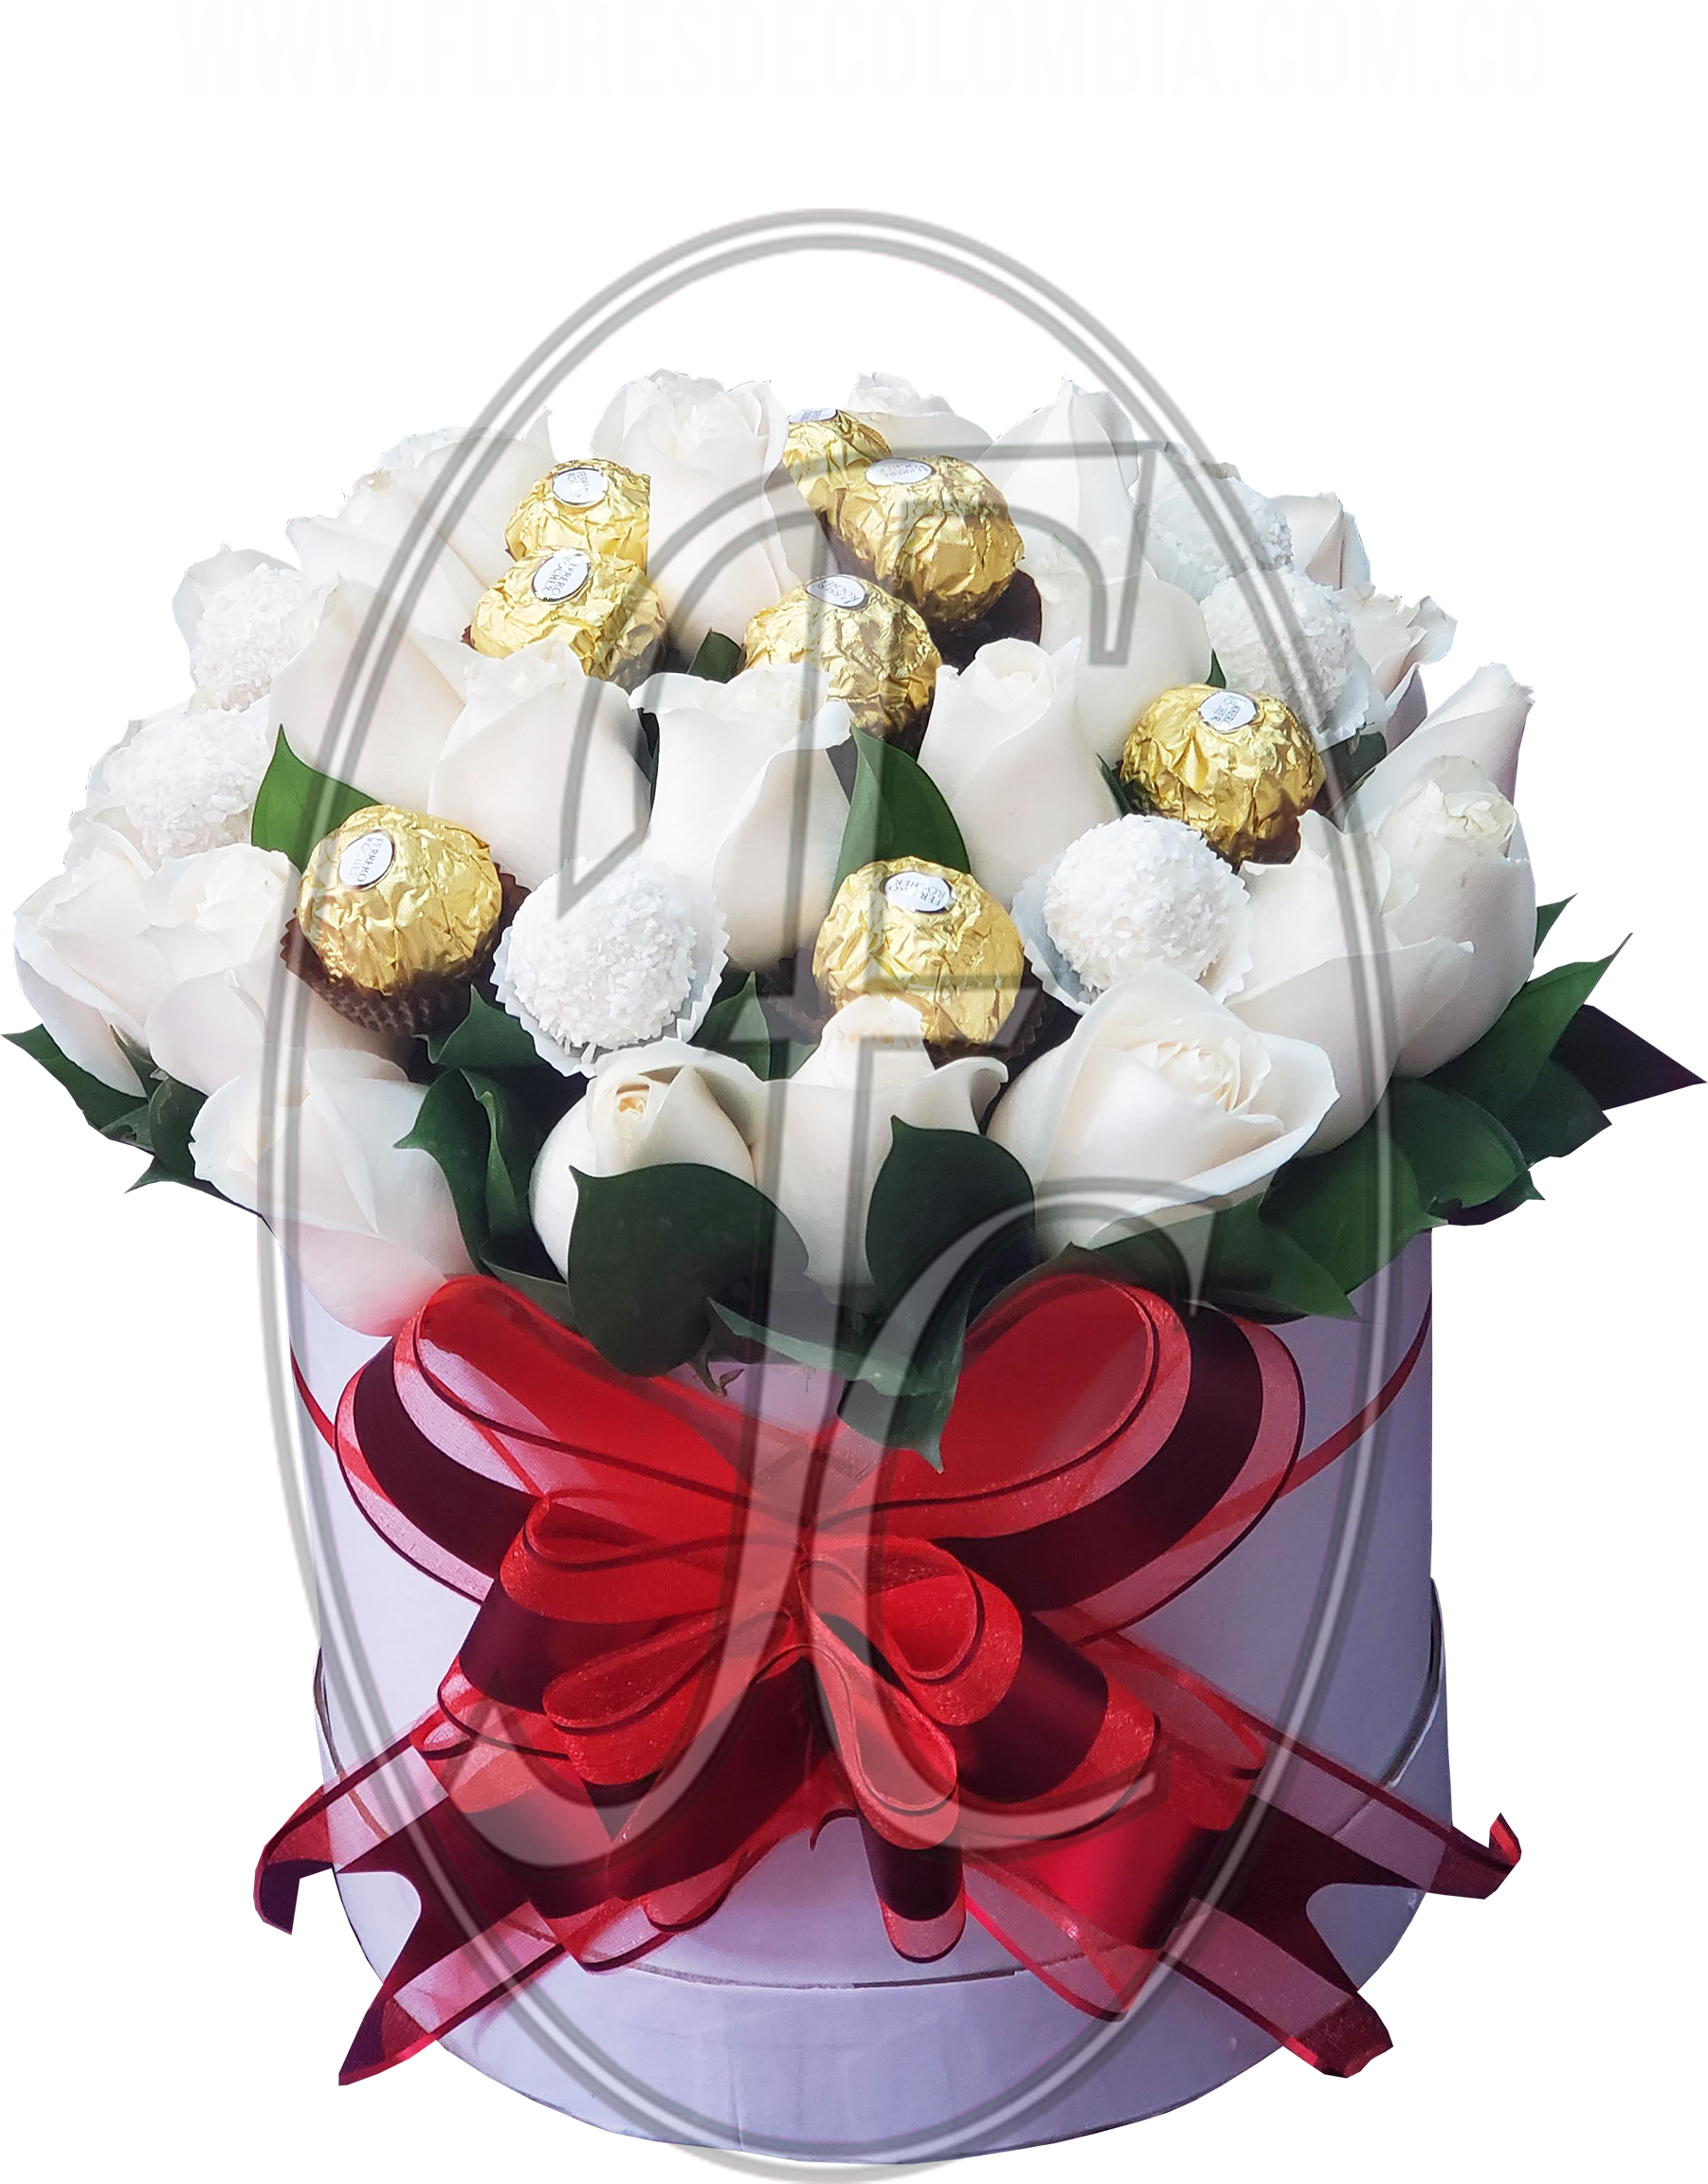 Caja regalo de rosas con chocolates │ Flores de Colombia